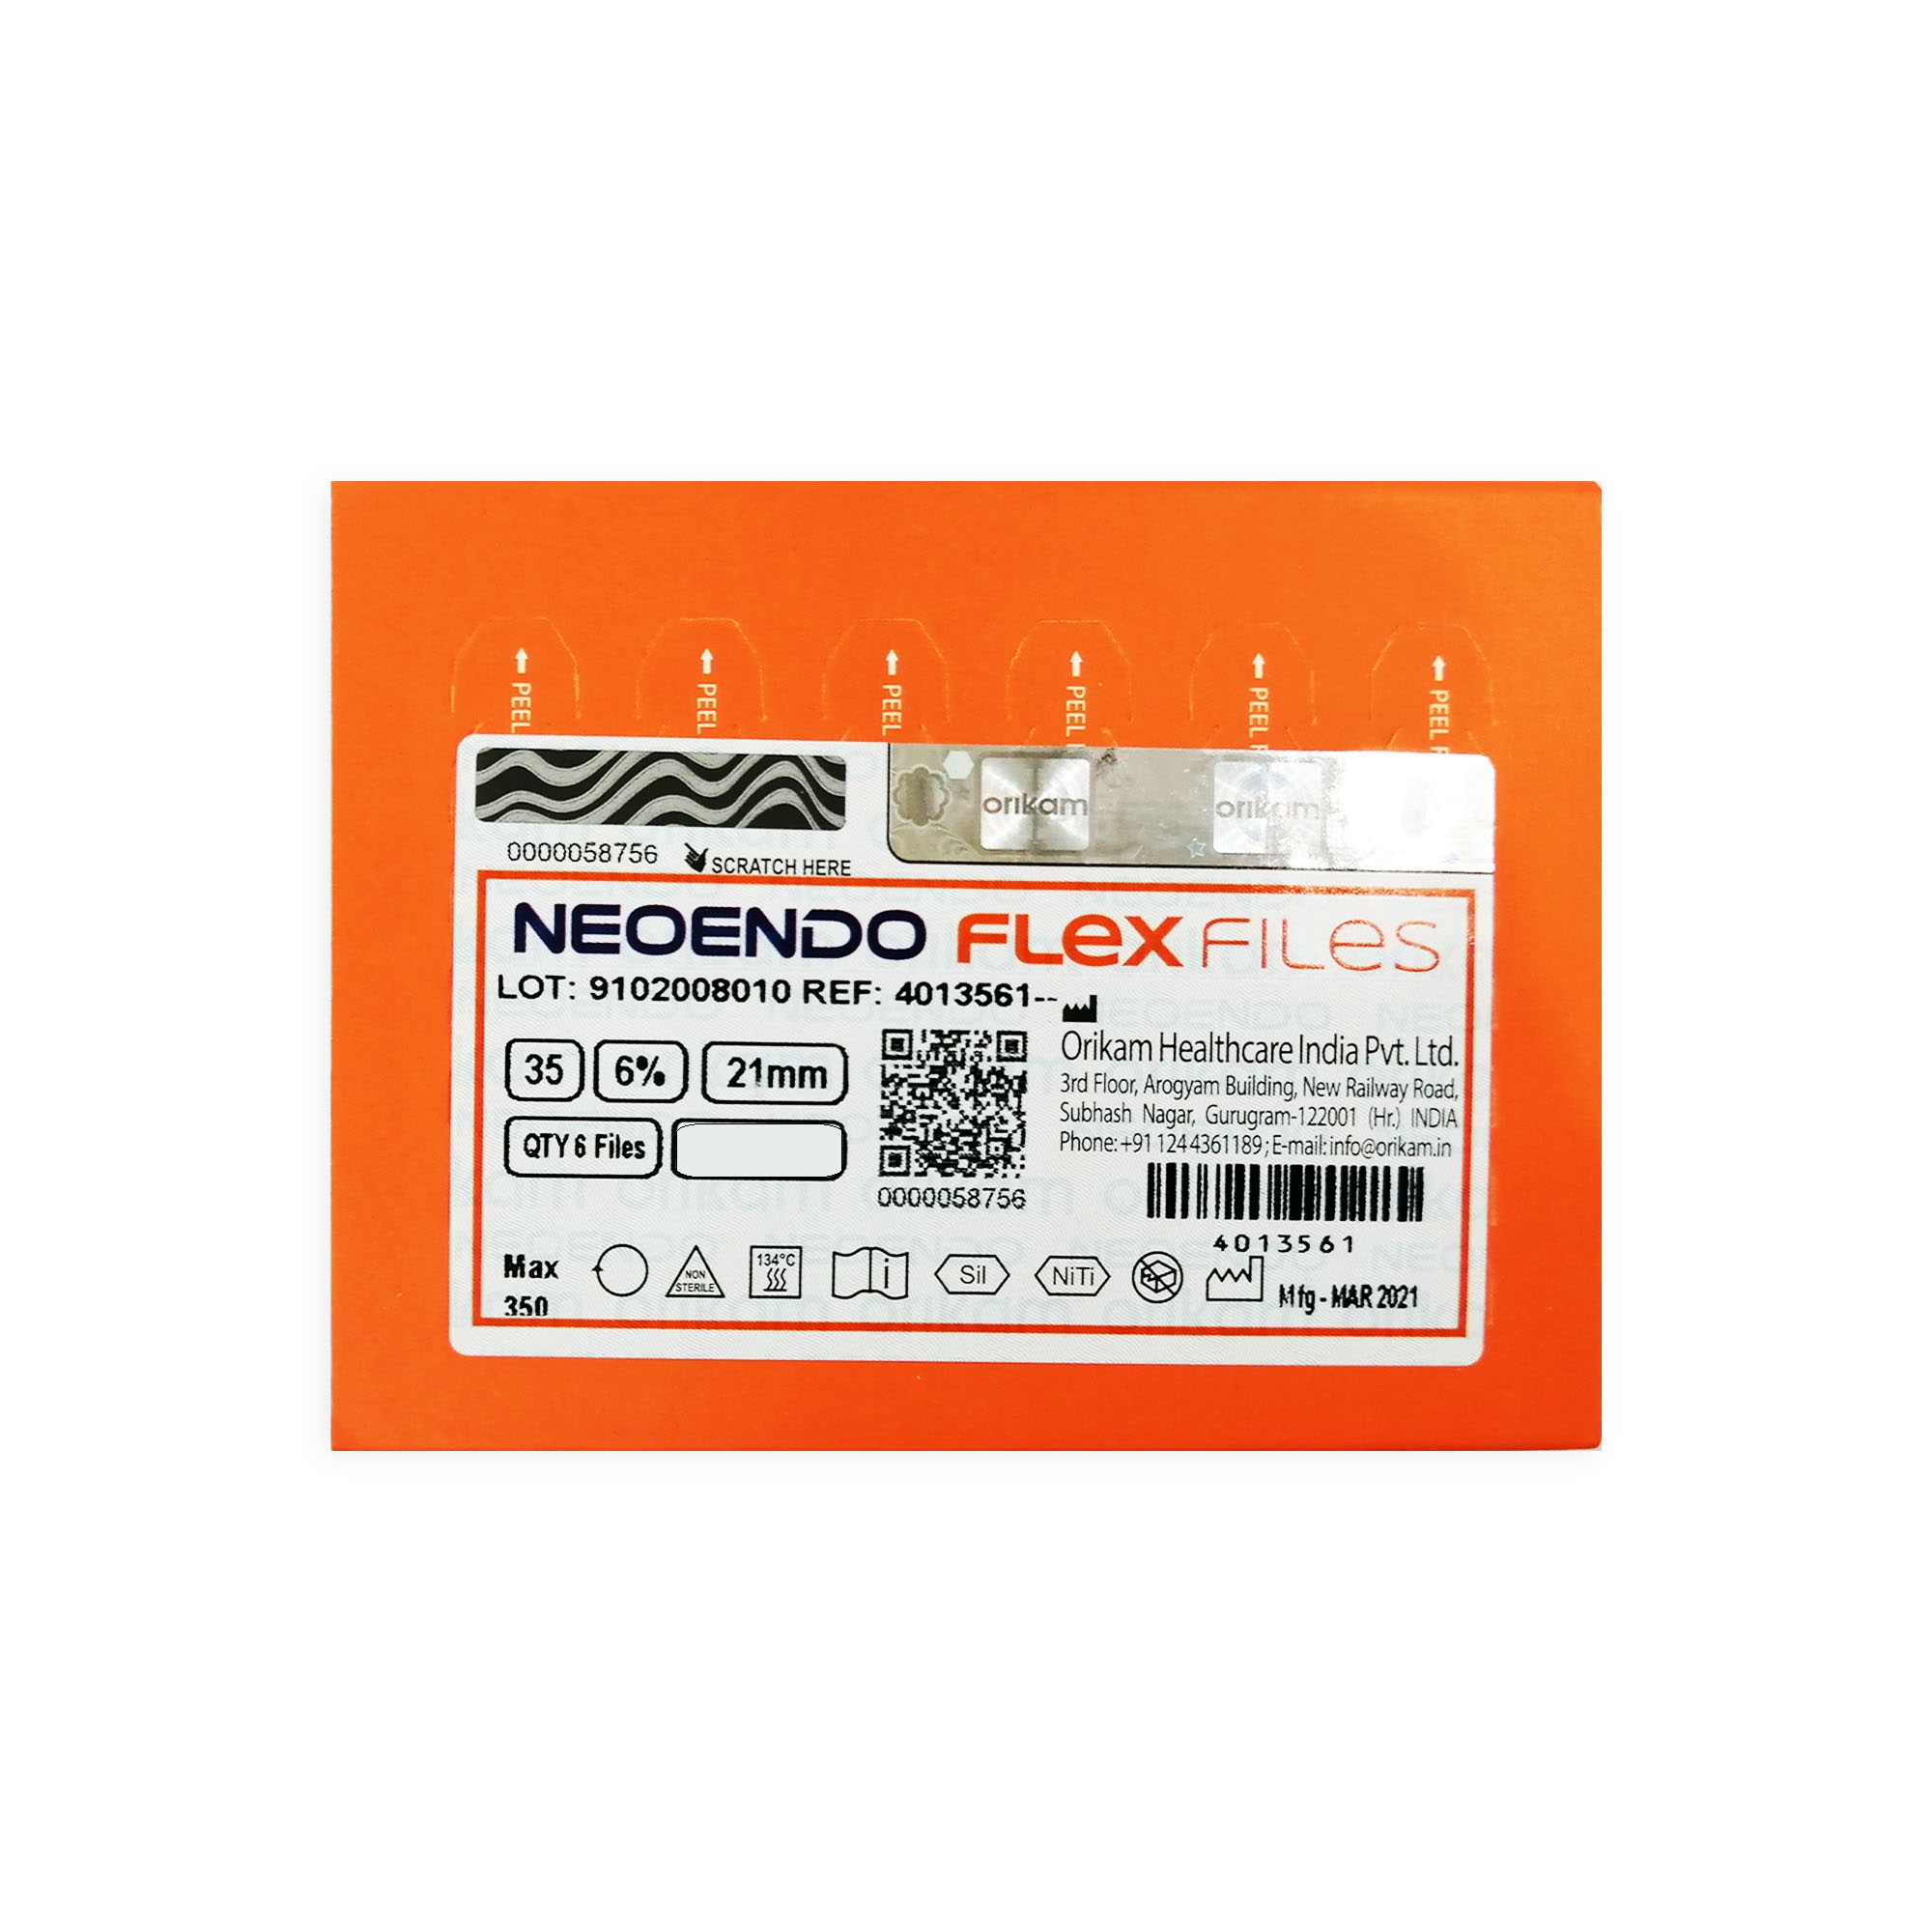 NeoEndo Flex Files 21mm 40/4 Endo Rotary Files